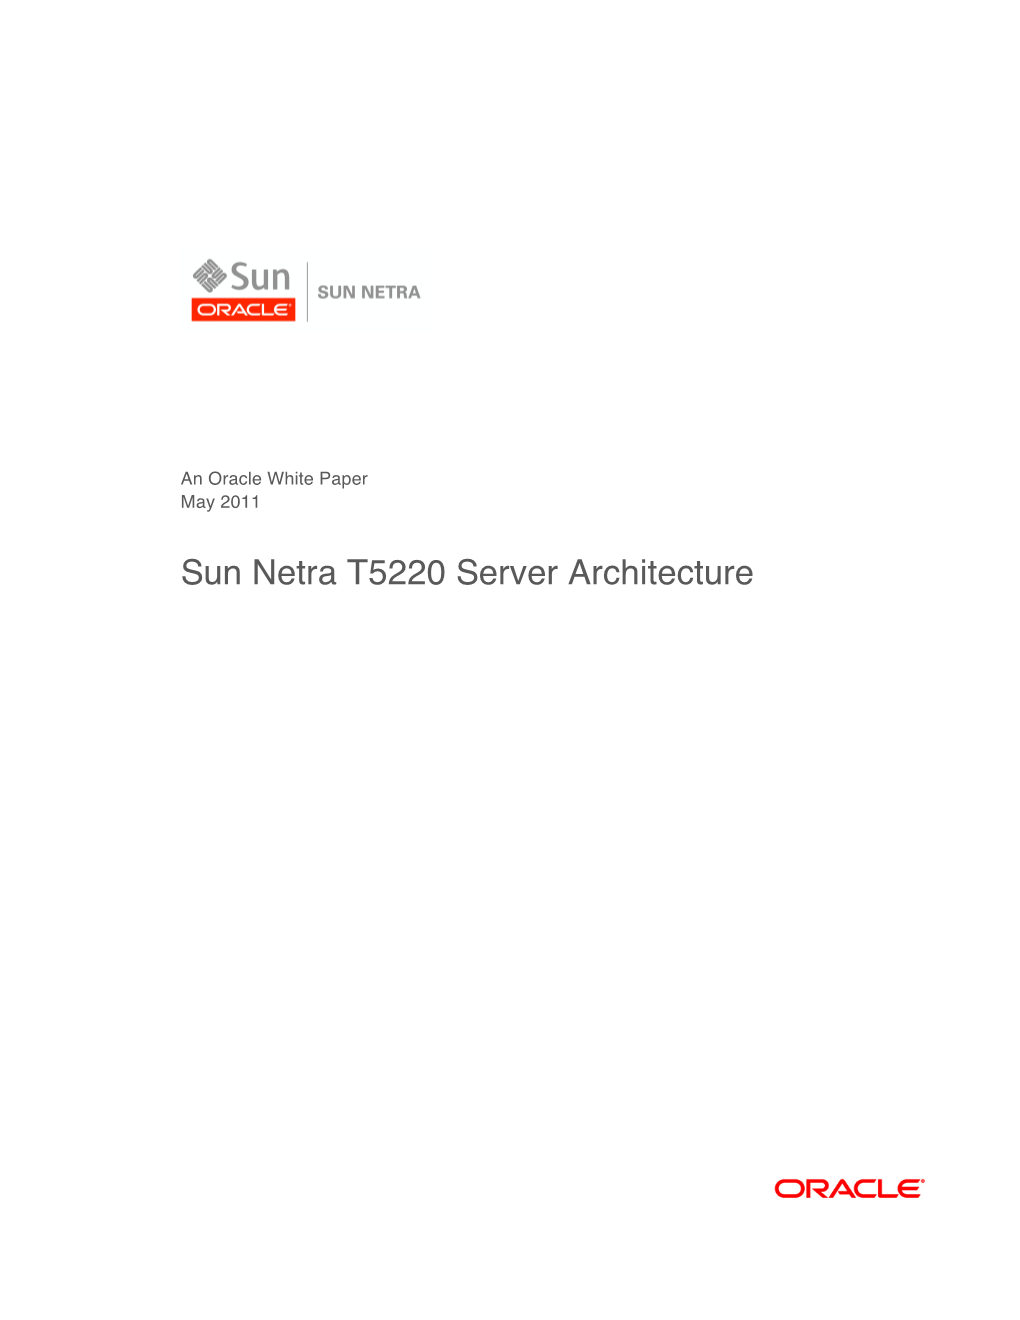 Sun Netra T5220 Server Architecture